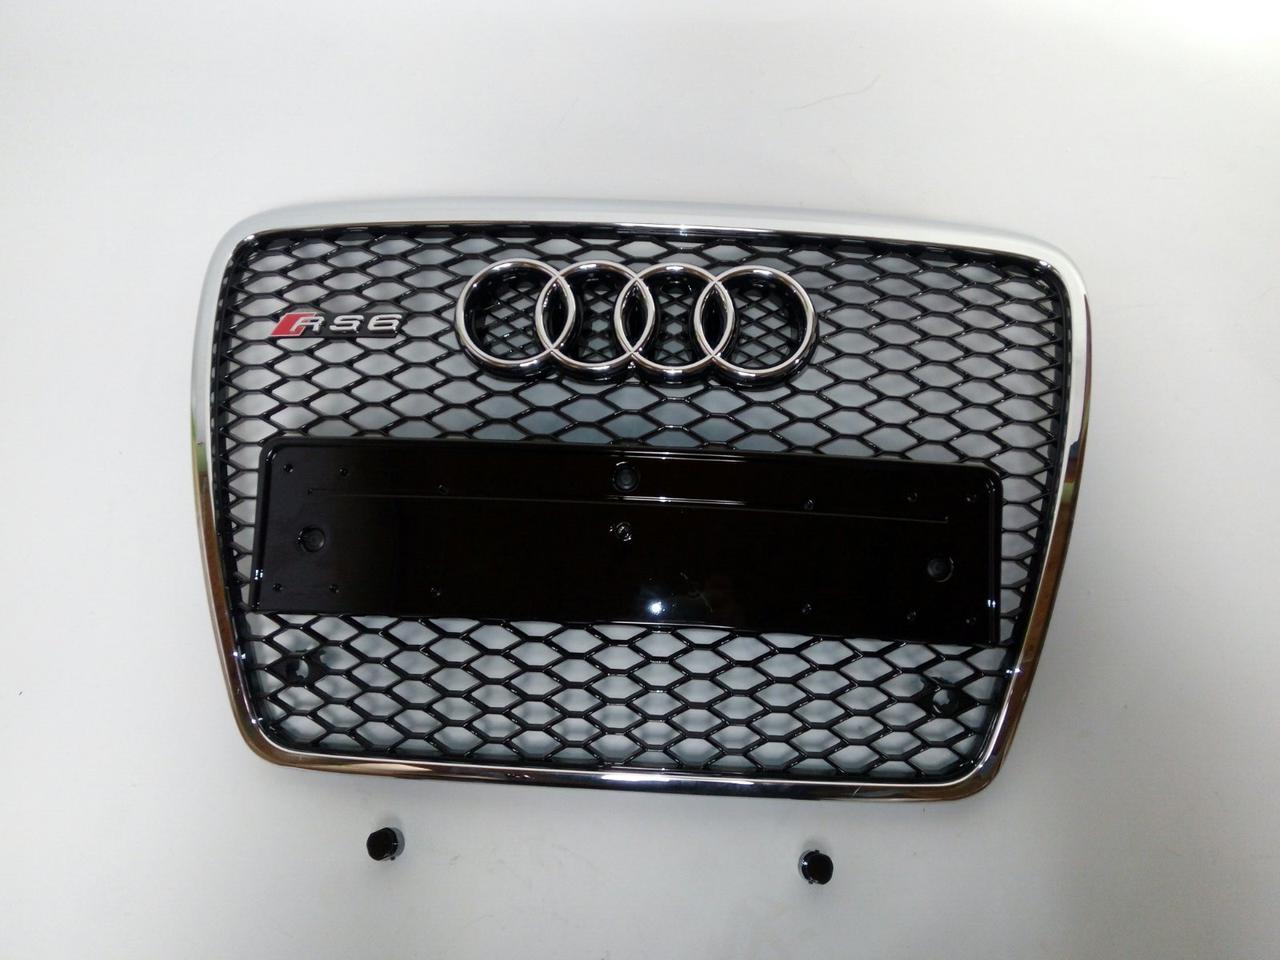 Решітка радіатора RS6 на Audi A6 2008-2012 (чорна з хром окантовкою)